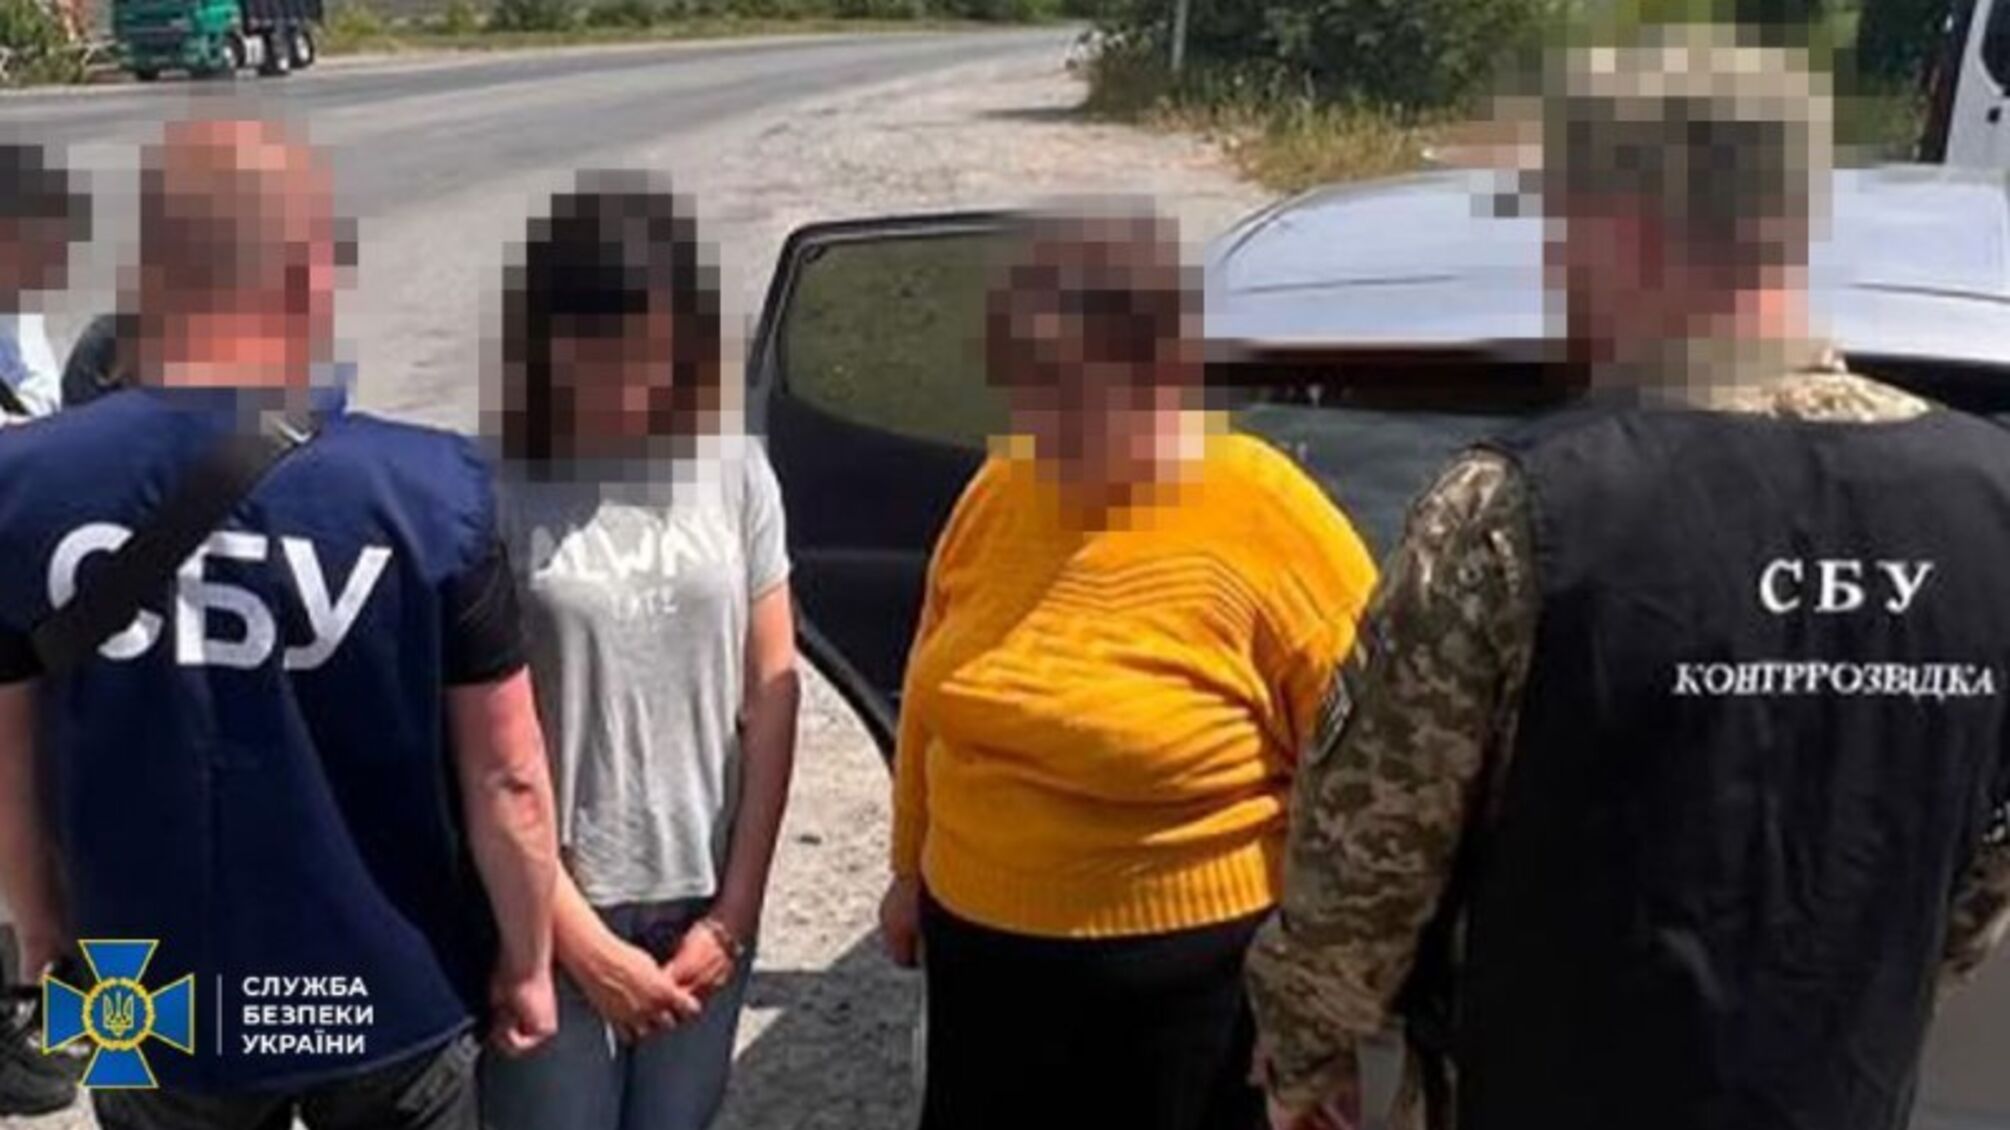 Хмельницкая депутат вместе со своими детьми шпионила для фсб: СБУ задержали семью